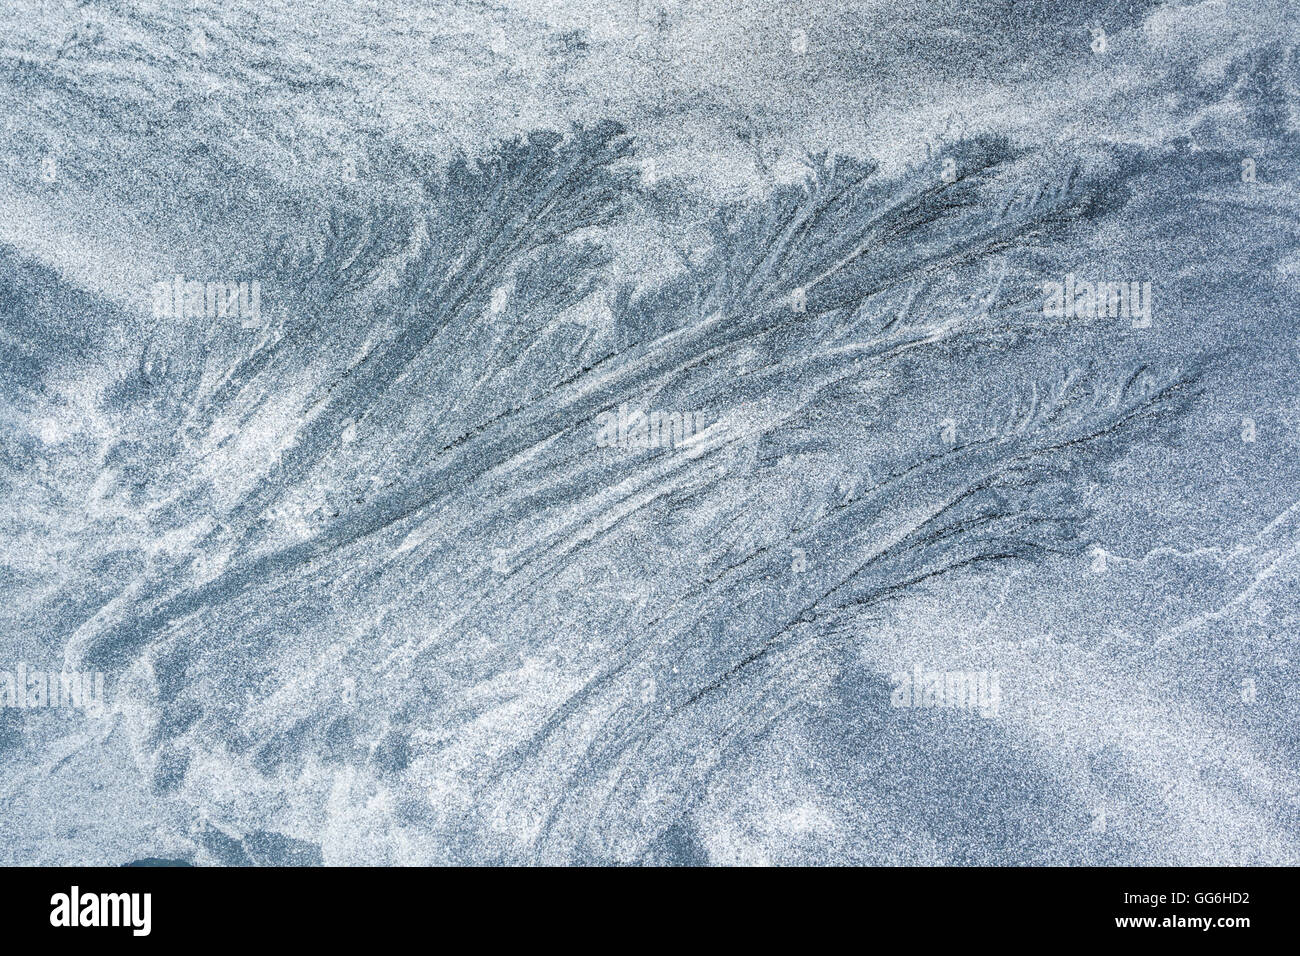 Mustern, gebildet durch die Gezeiten des schwarzen vulkanischen Sand und weißen granulierten Meer Muscheln bei Talisker Bay, Isle Of Skye, Schottland Stockfoto